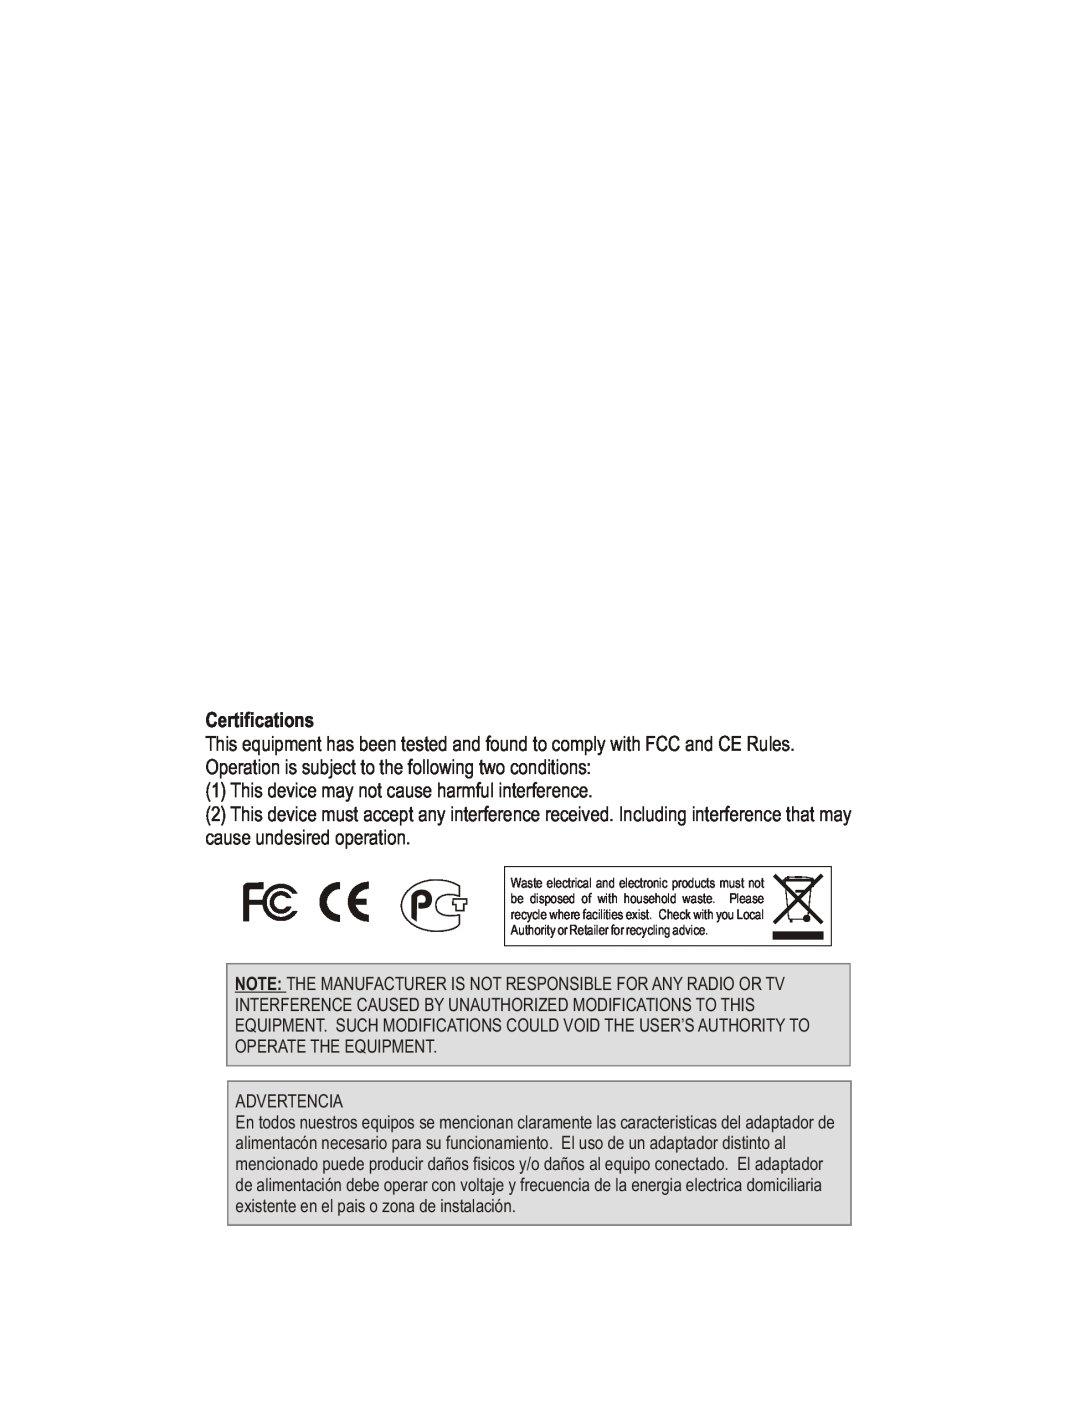 TRENDnet TEW-434APB manual Certifications 